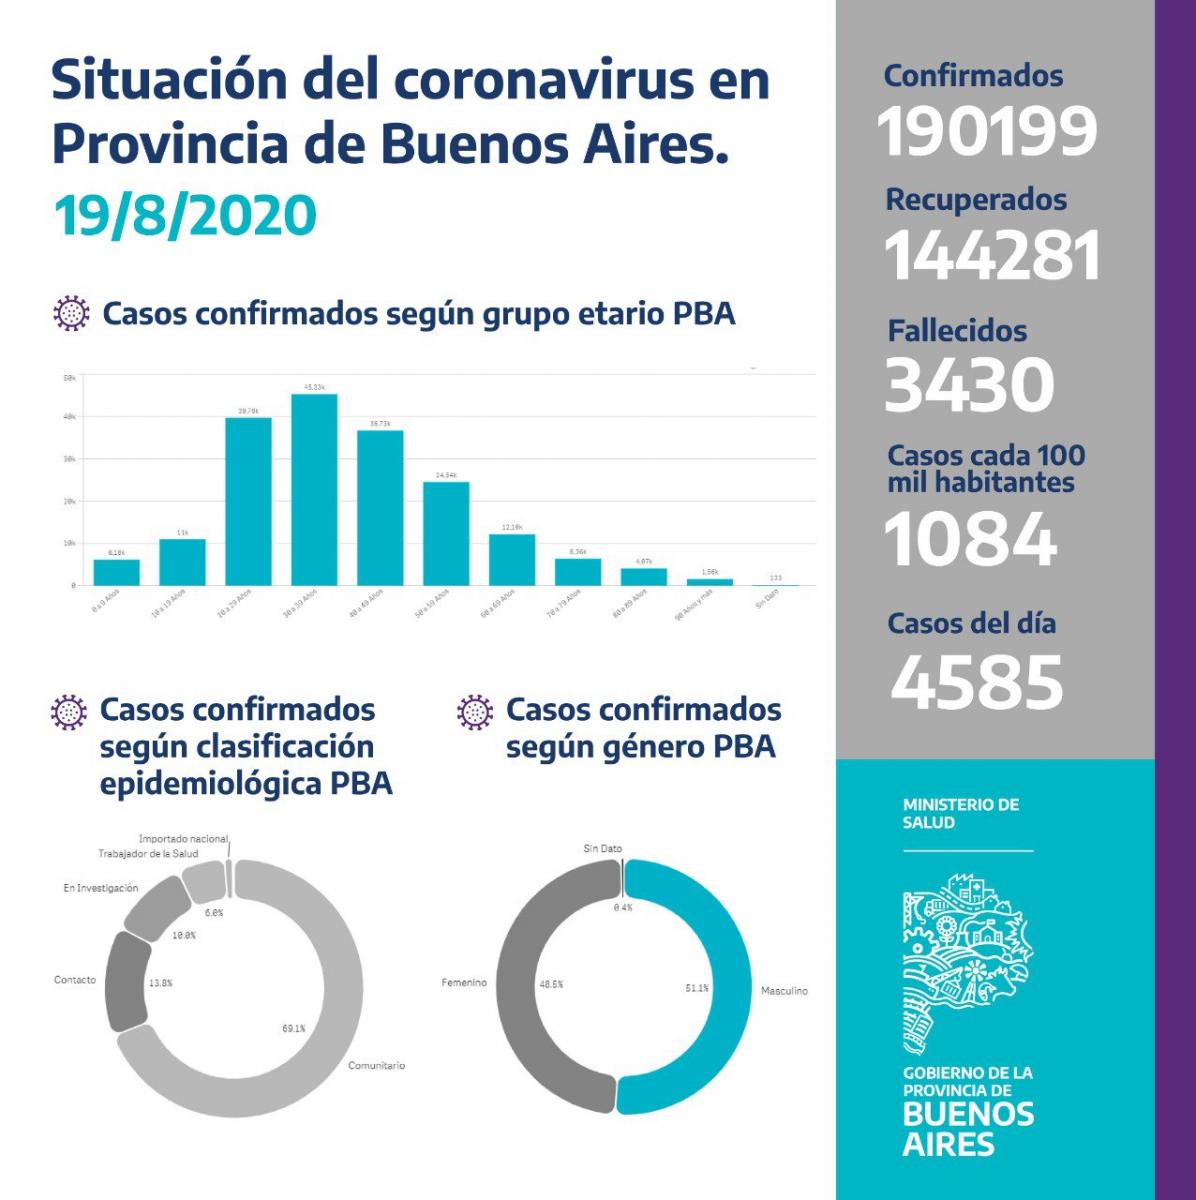 CIFRAS OFICIALES. Estadísticas de la Provincia de Buenos Aires -no incluye CABA-.